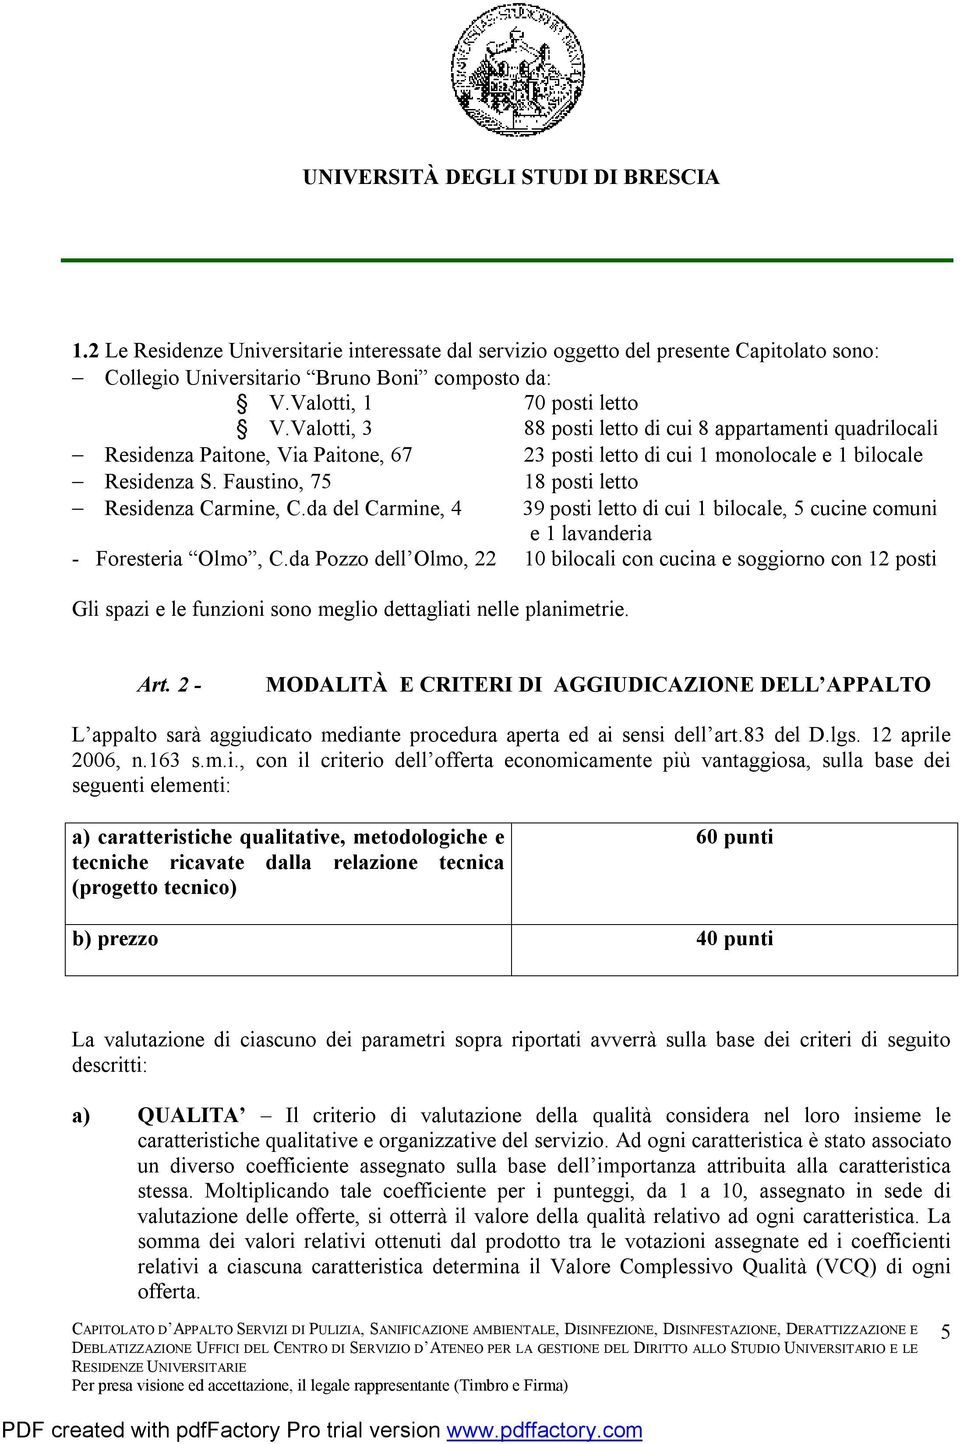 Faustino, 75 18 posti letto - Residenza Carmine, C.da del Carmine, 4 39 posti letto di cui 1 bilocale, 5 cucine comuni e 1 lavanderia - Foresteria Olmo, C.